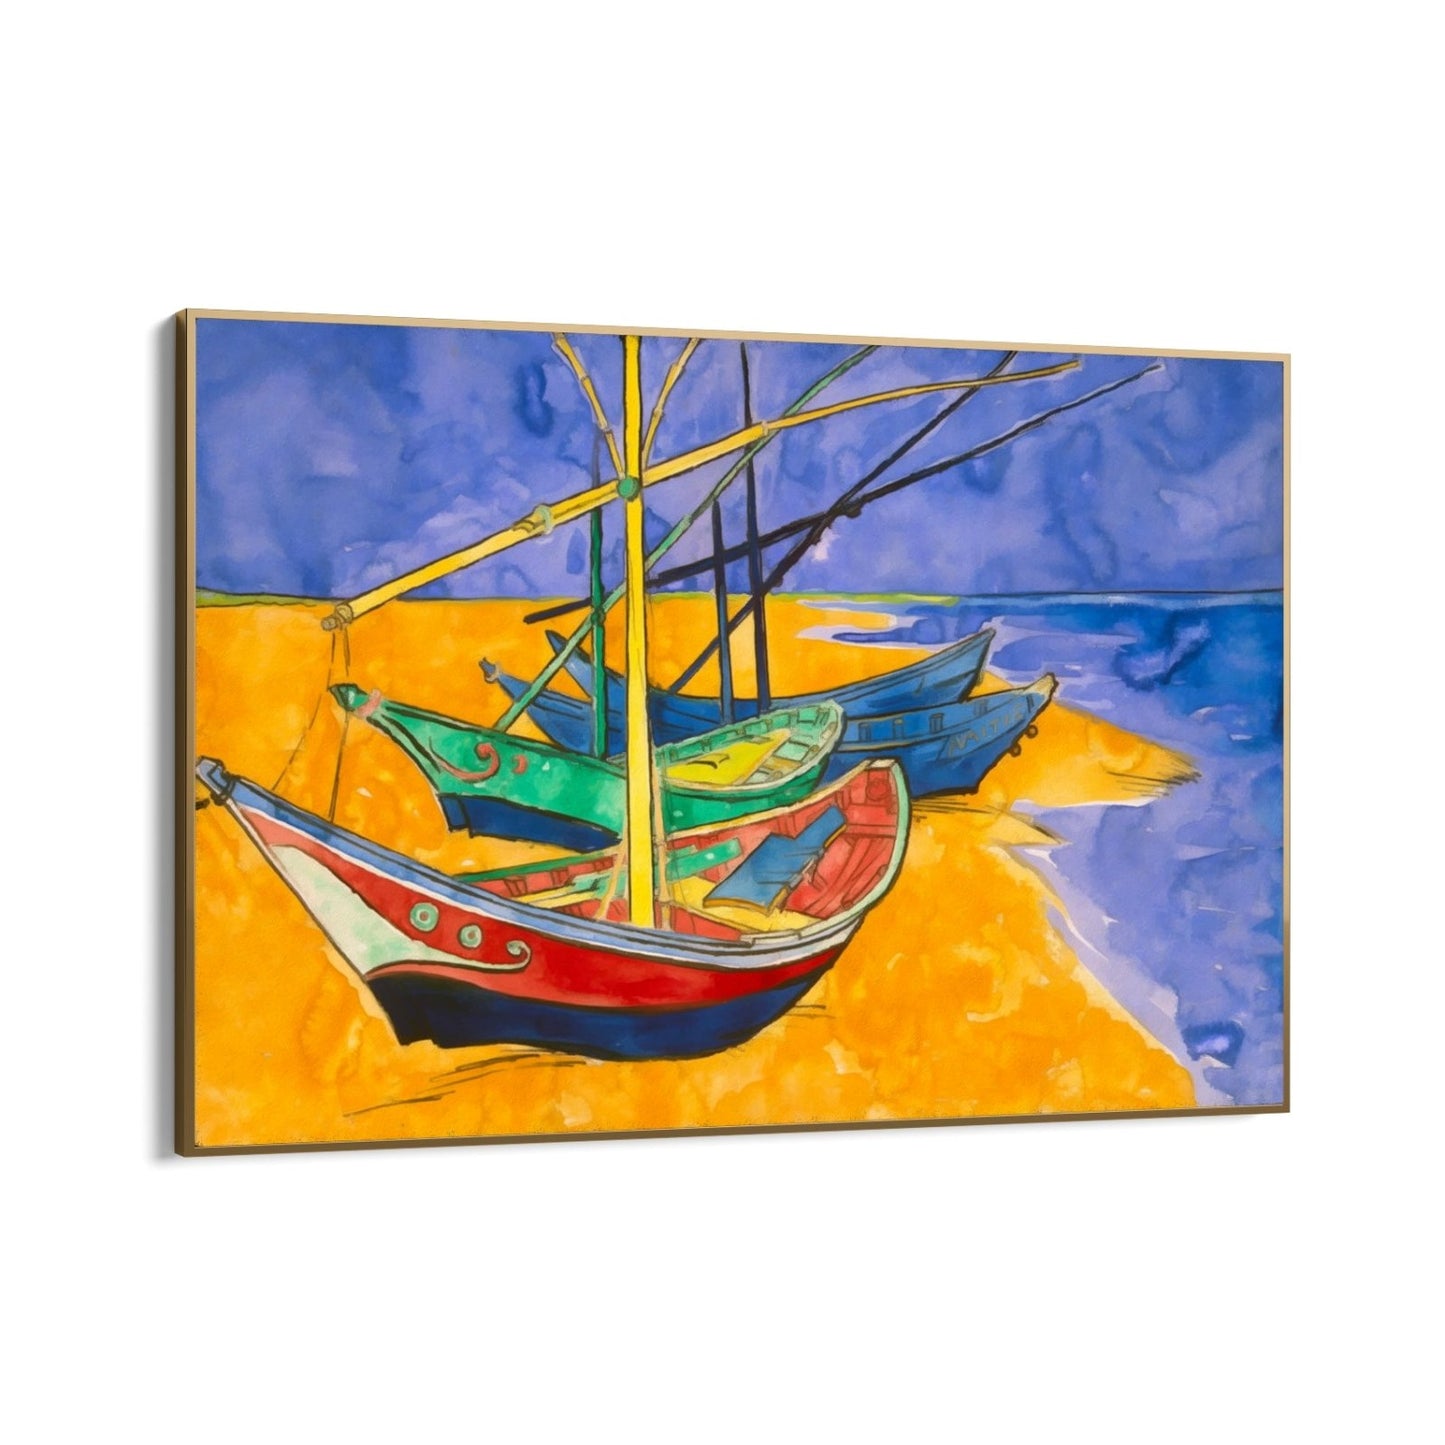 Ribarski brodovi na plaži I, Vincent Van Gogh